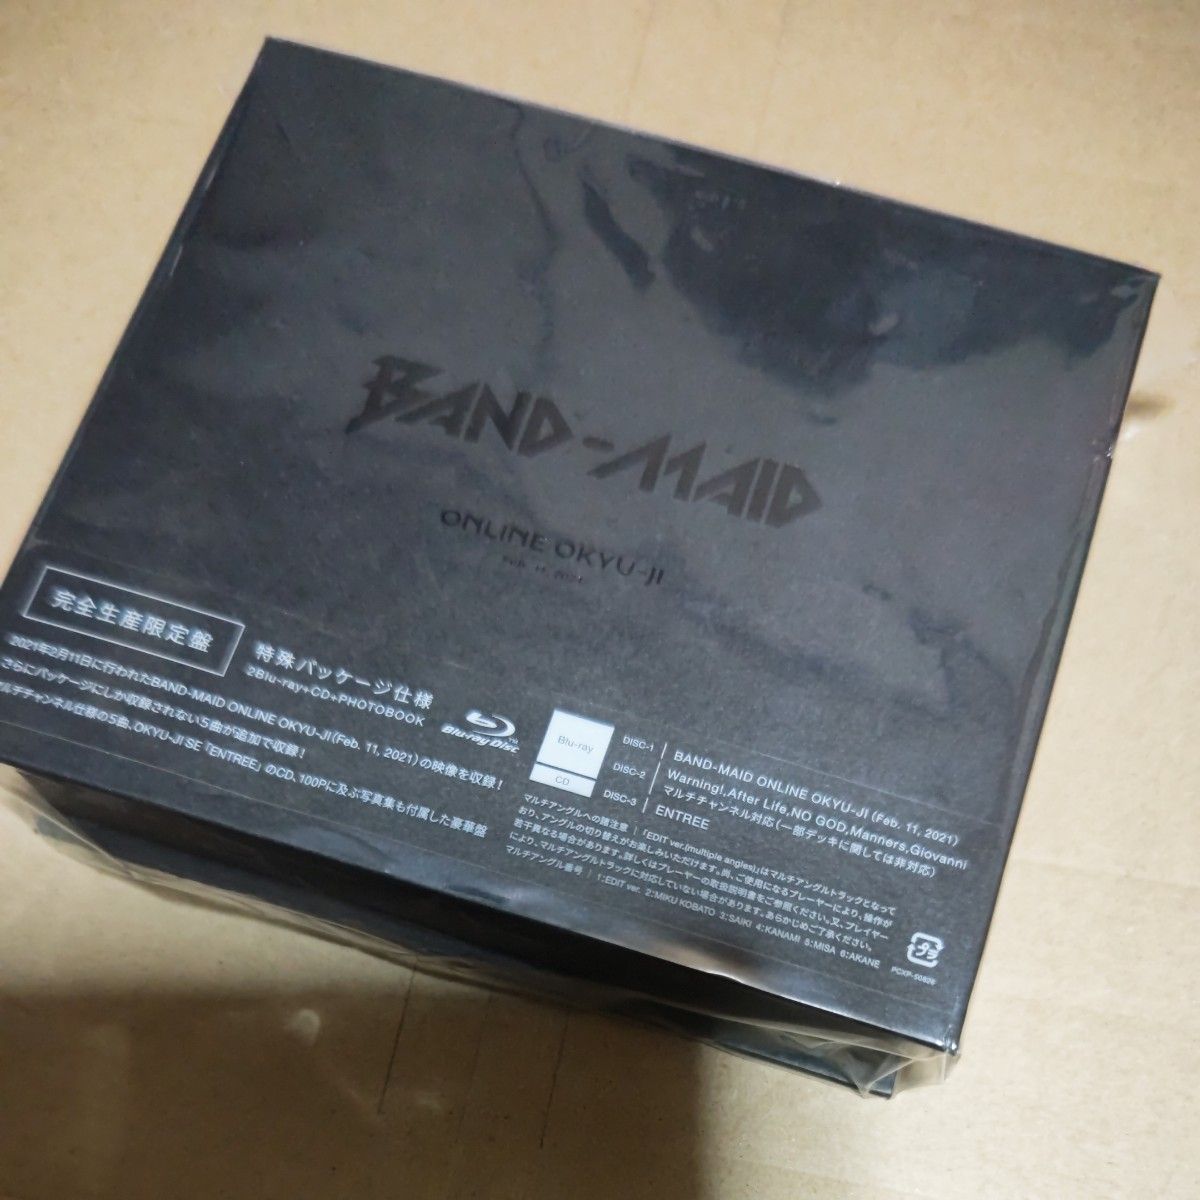 BAND-MAID online OKYU-JI 2Blu-ray+CD 美品